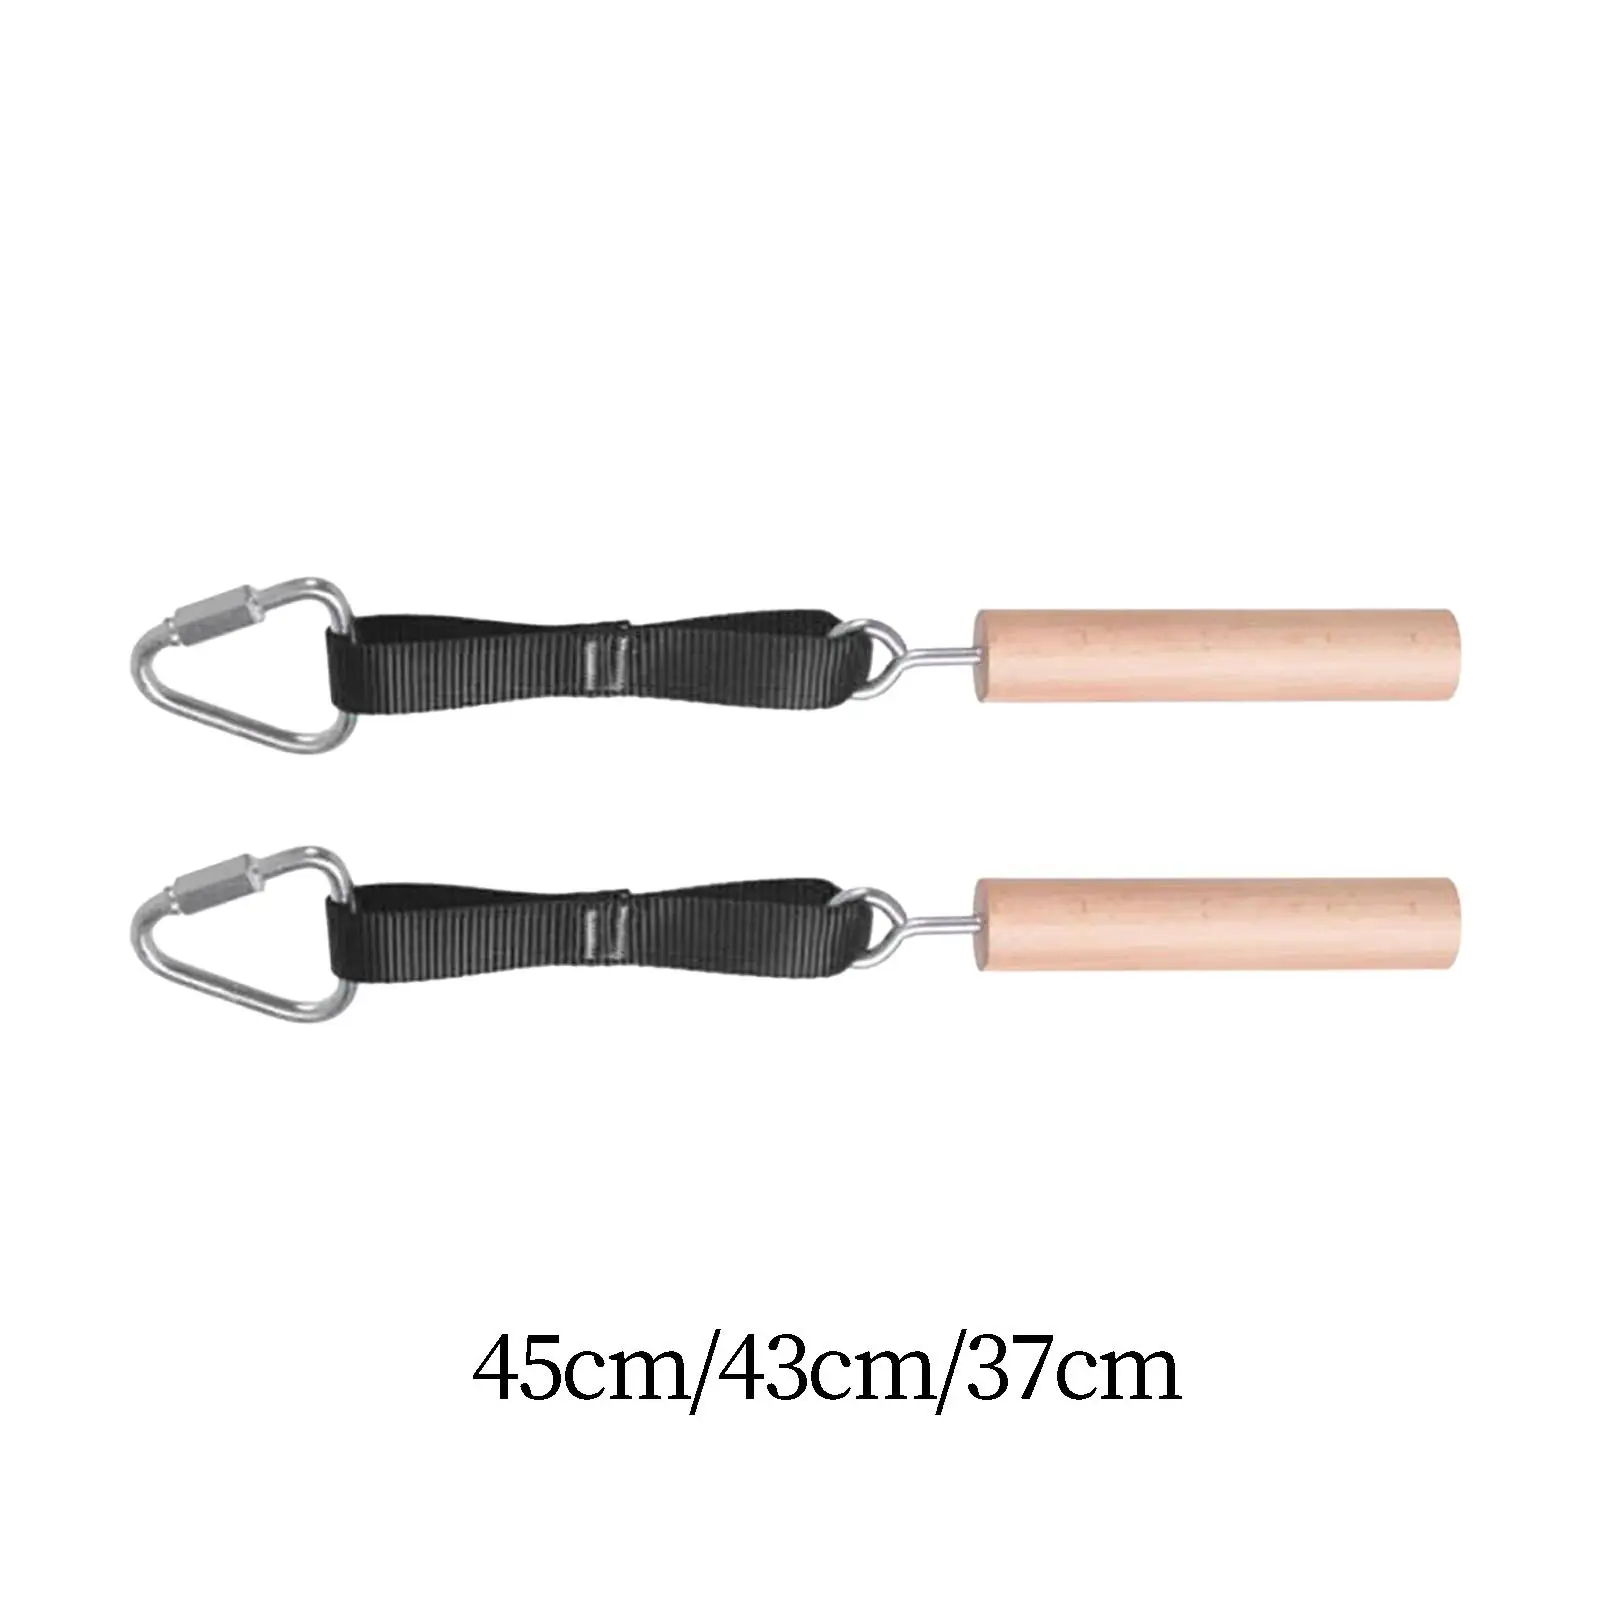 2 piece pull-up handles handles hand grips strengthening device women men